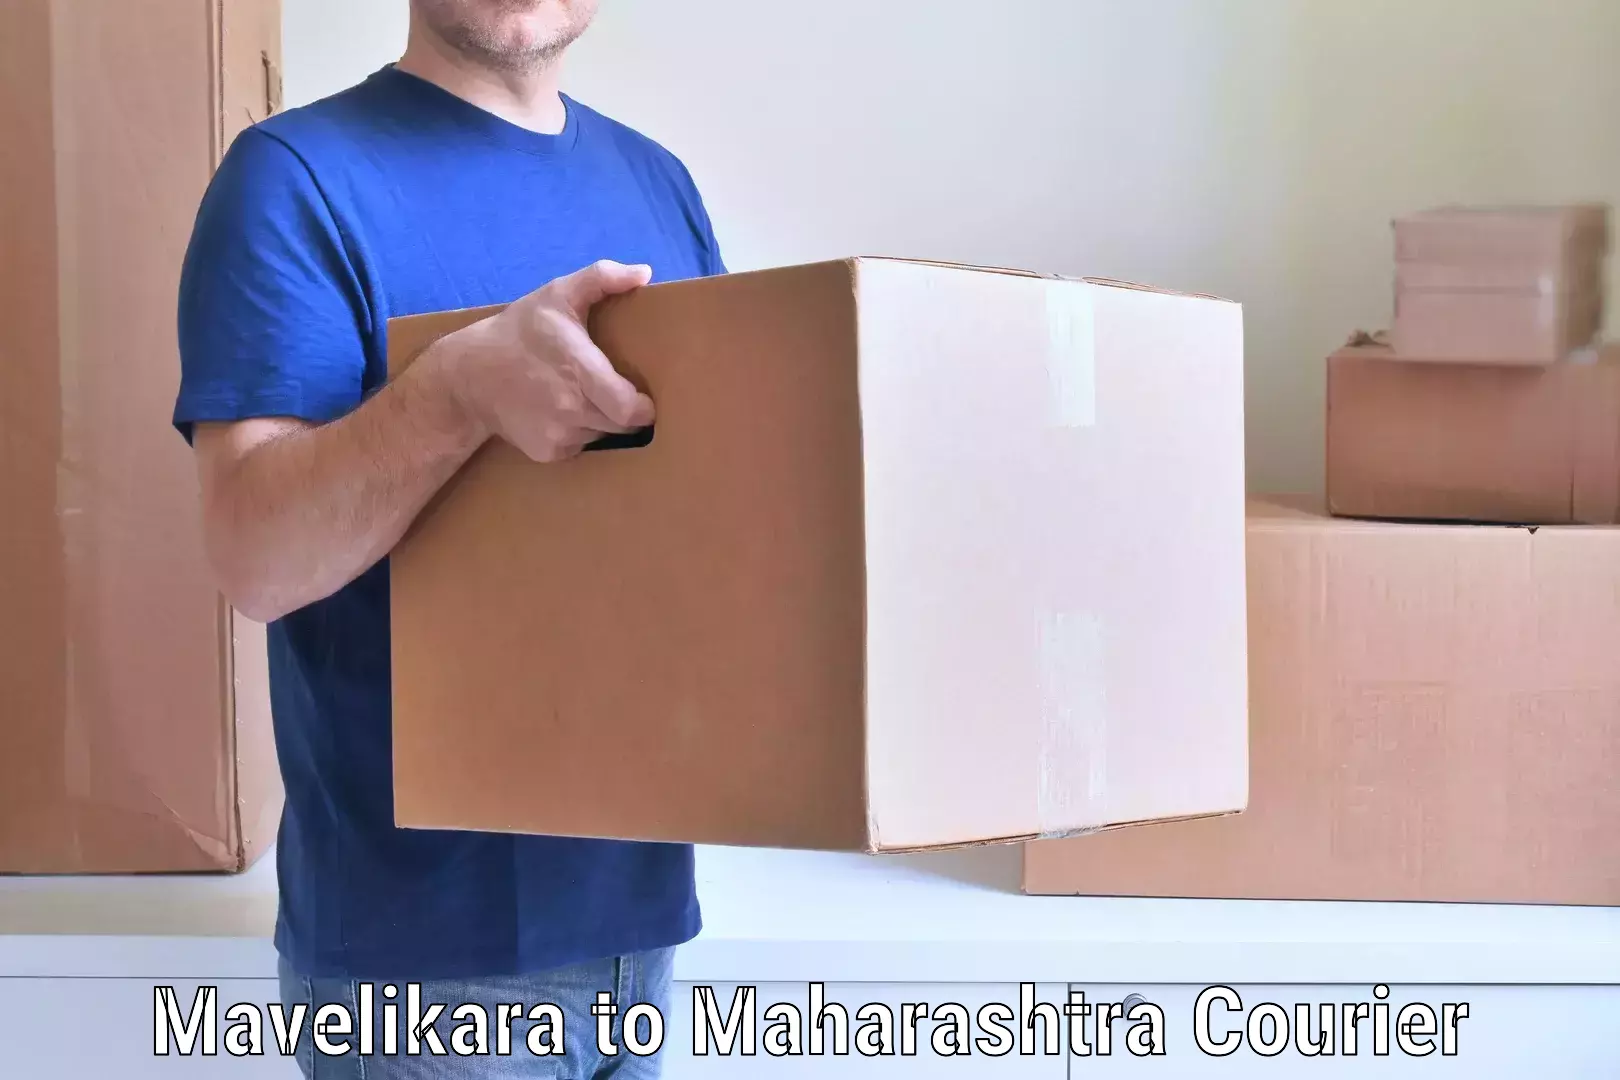 Budget-friendly moving services in Mavelikara to Maharashtra